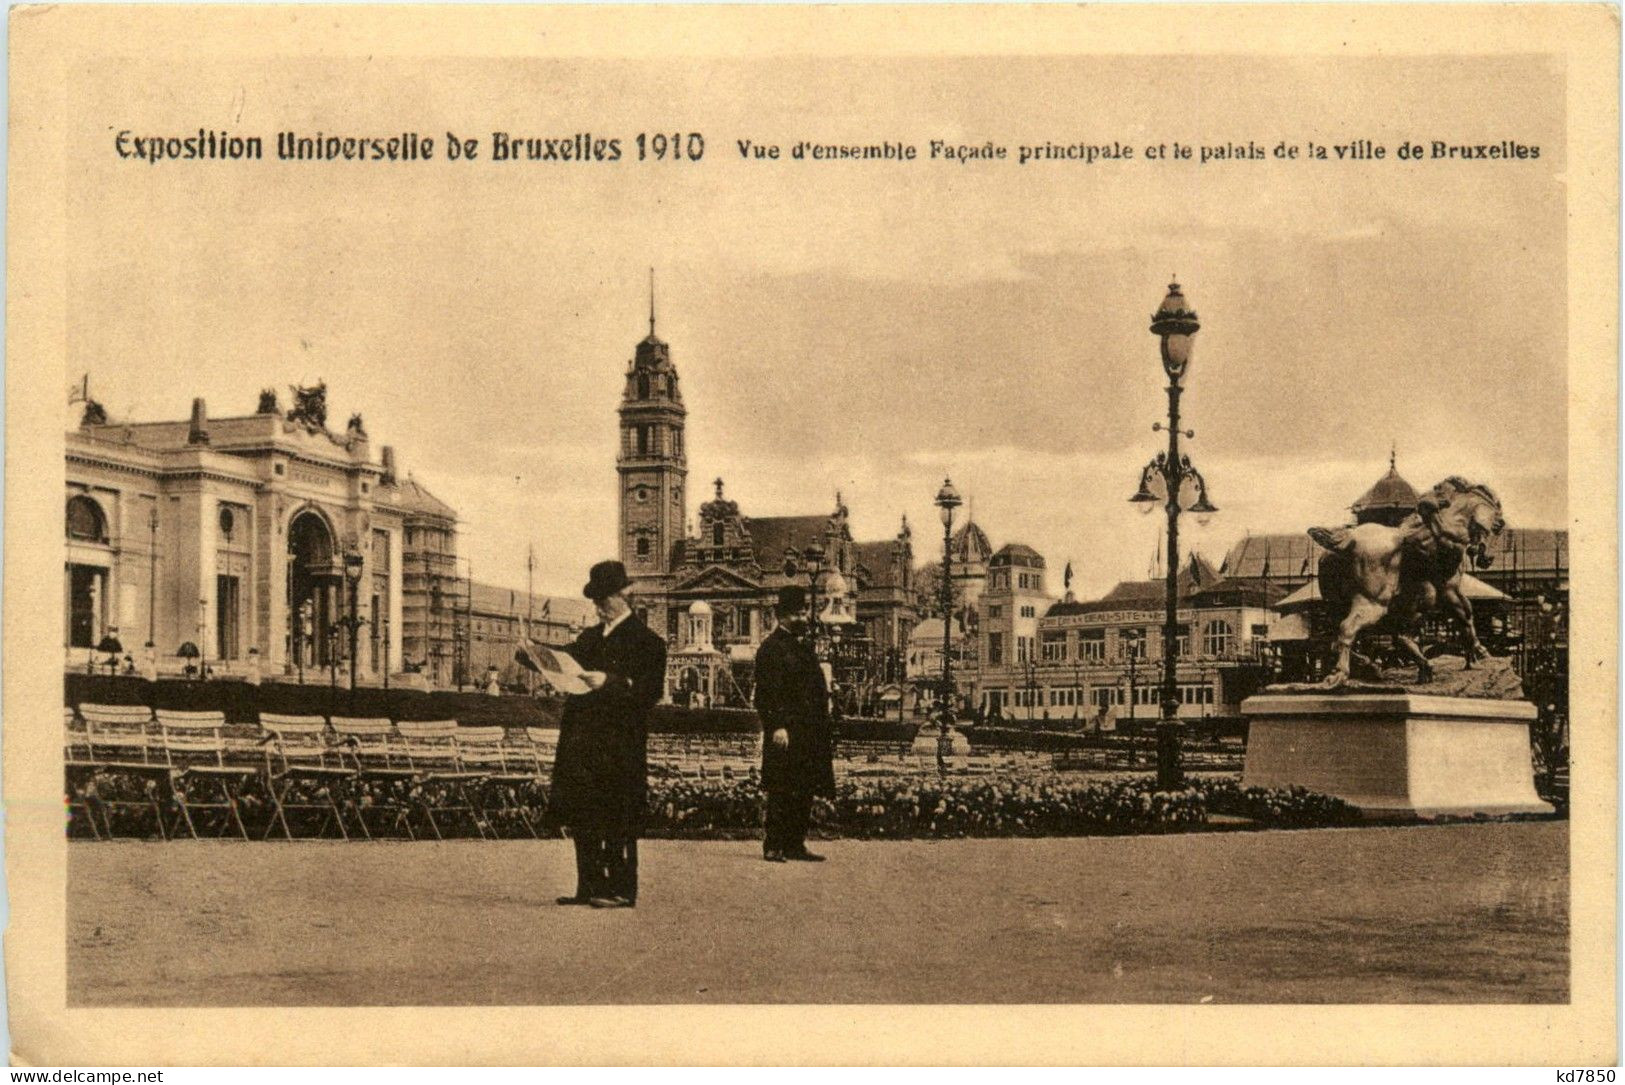 Expostition Universelle De Bruxelles 1910 - Universal Exhibitions